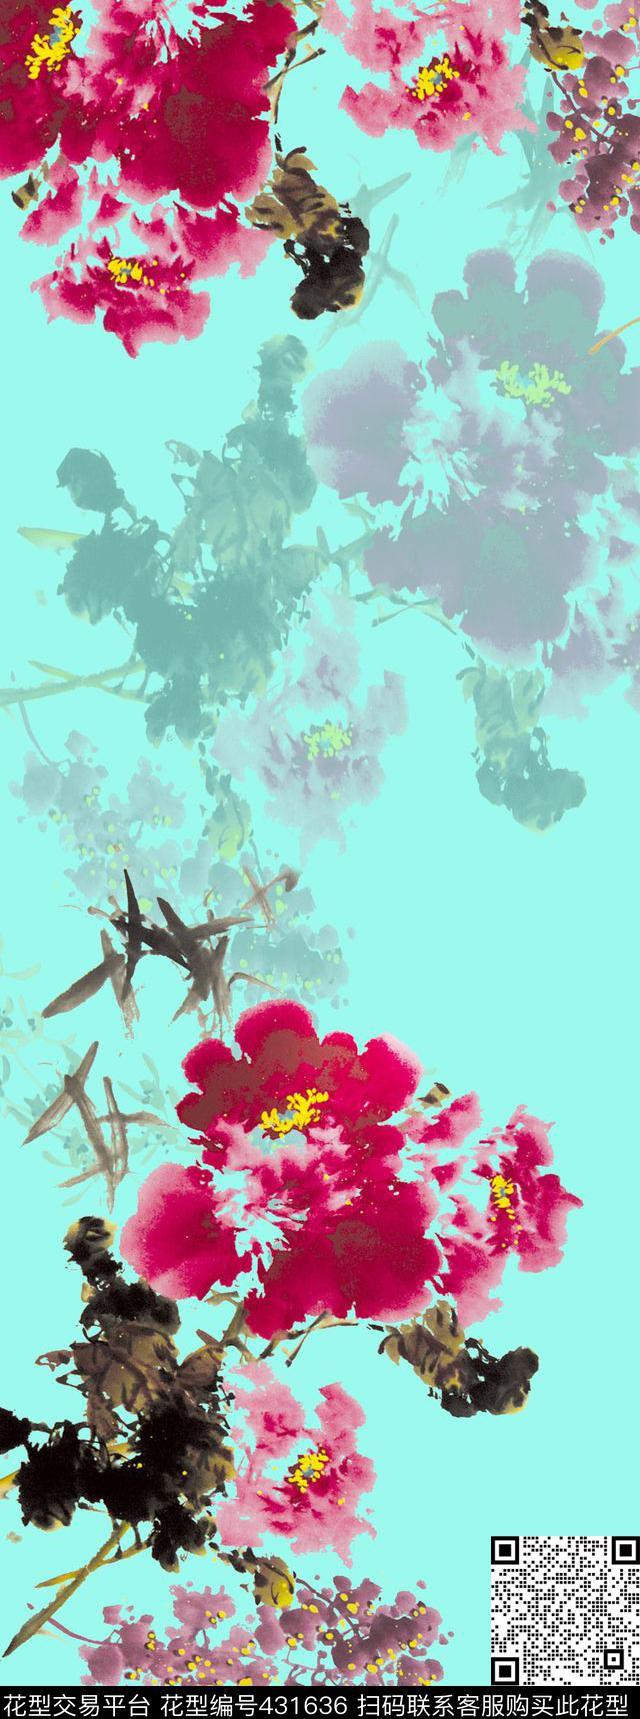 中国风写意水墨花卉图 - 431636 - 水墨风 花卉 围巾 - 传统印花花型 － 长巾花型设计 － 瓦栏